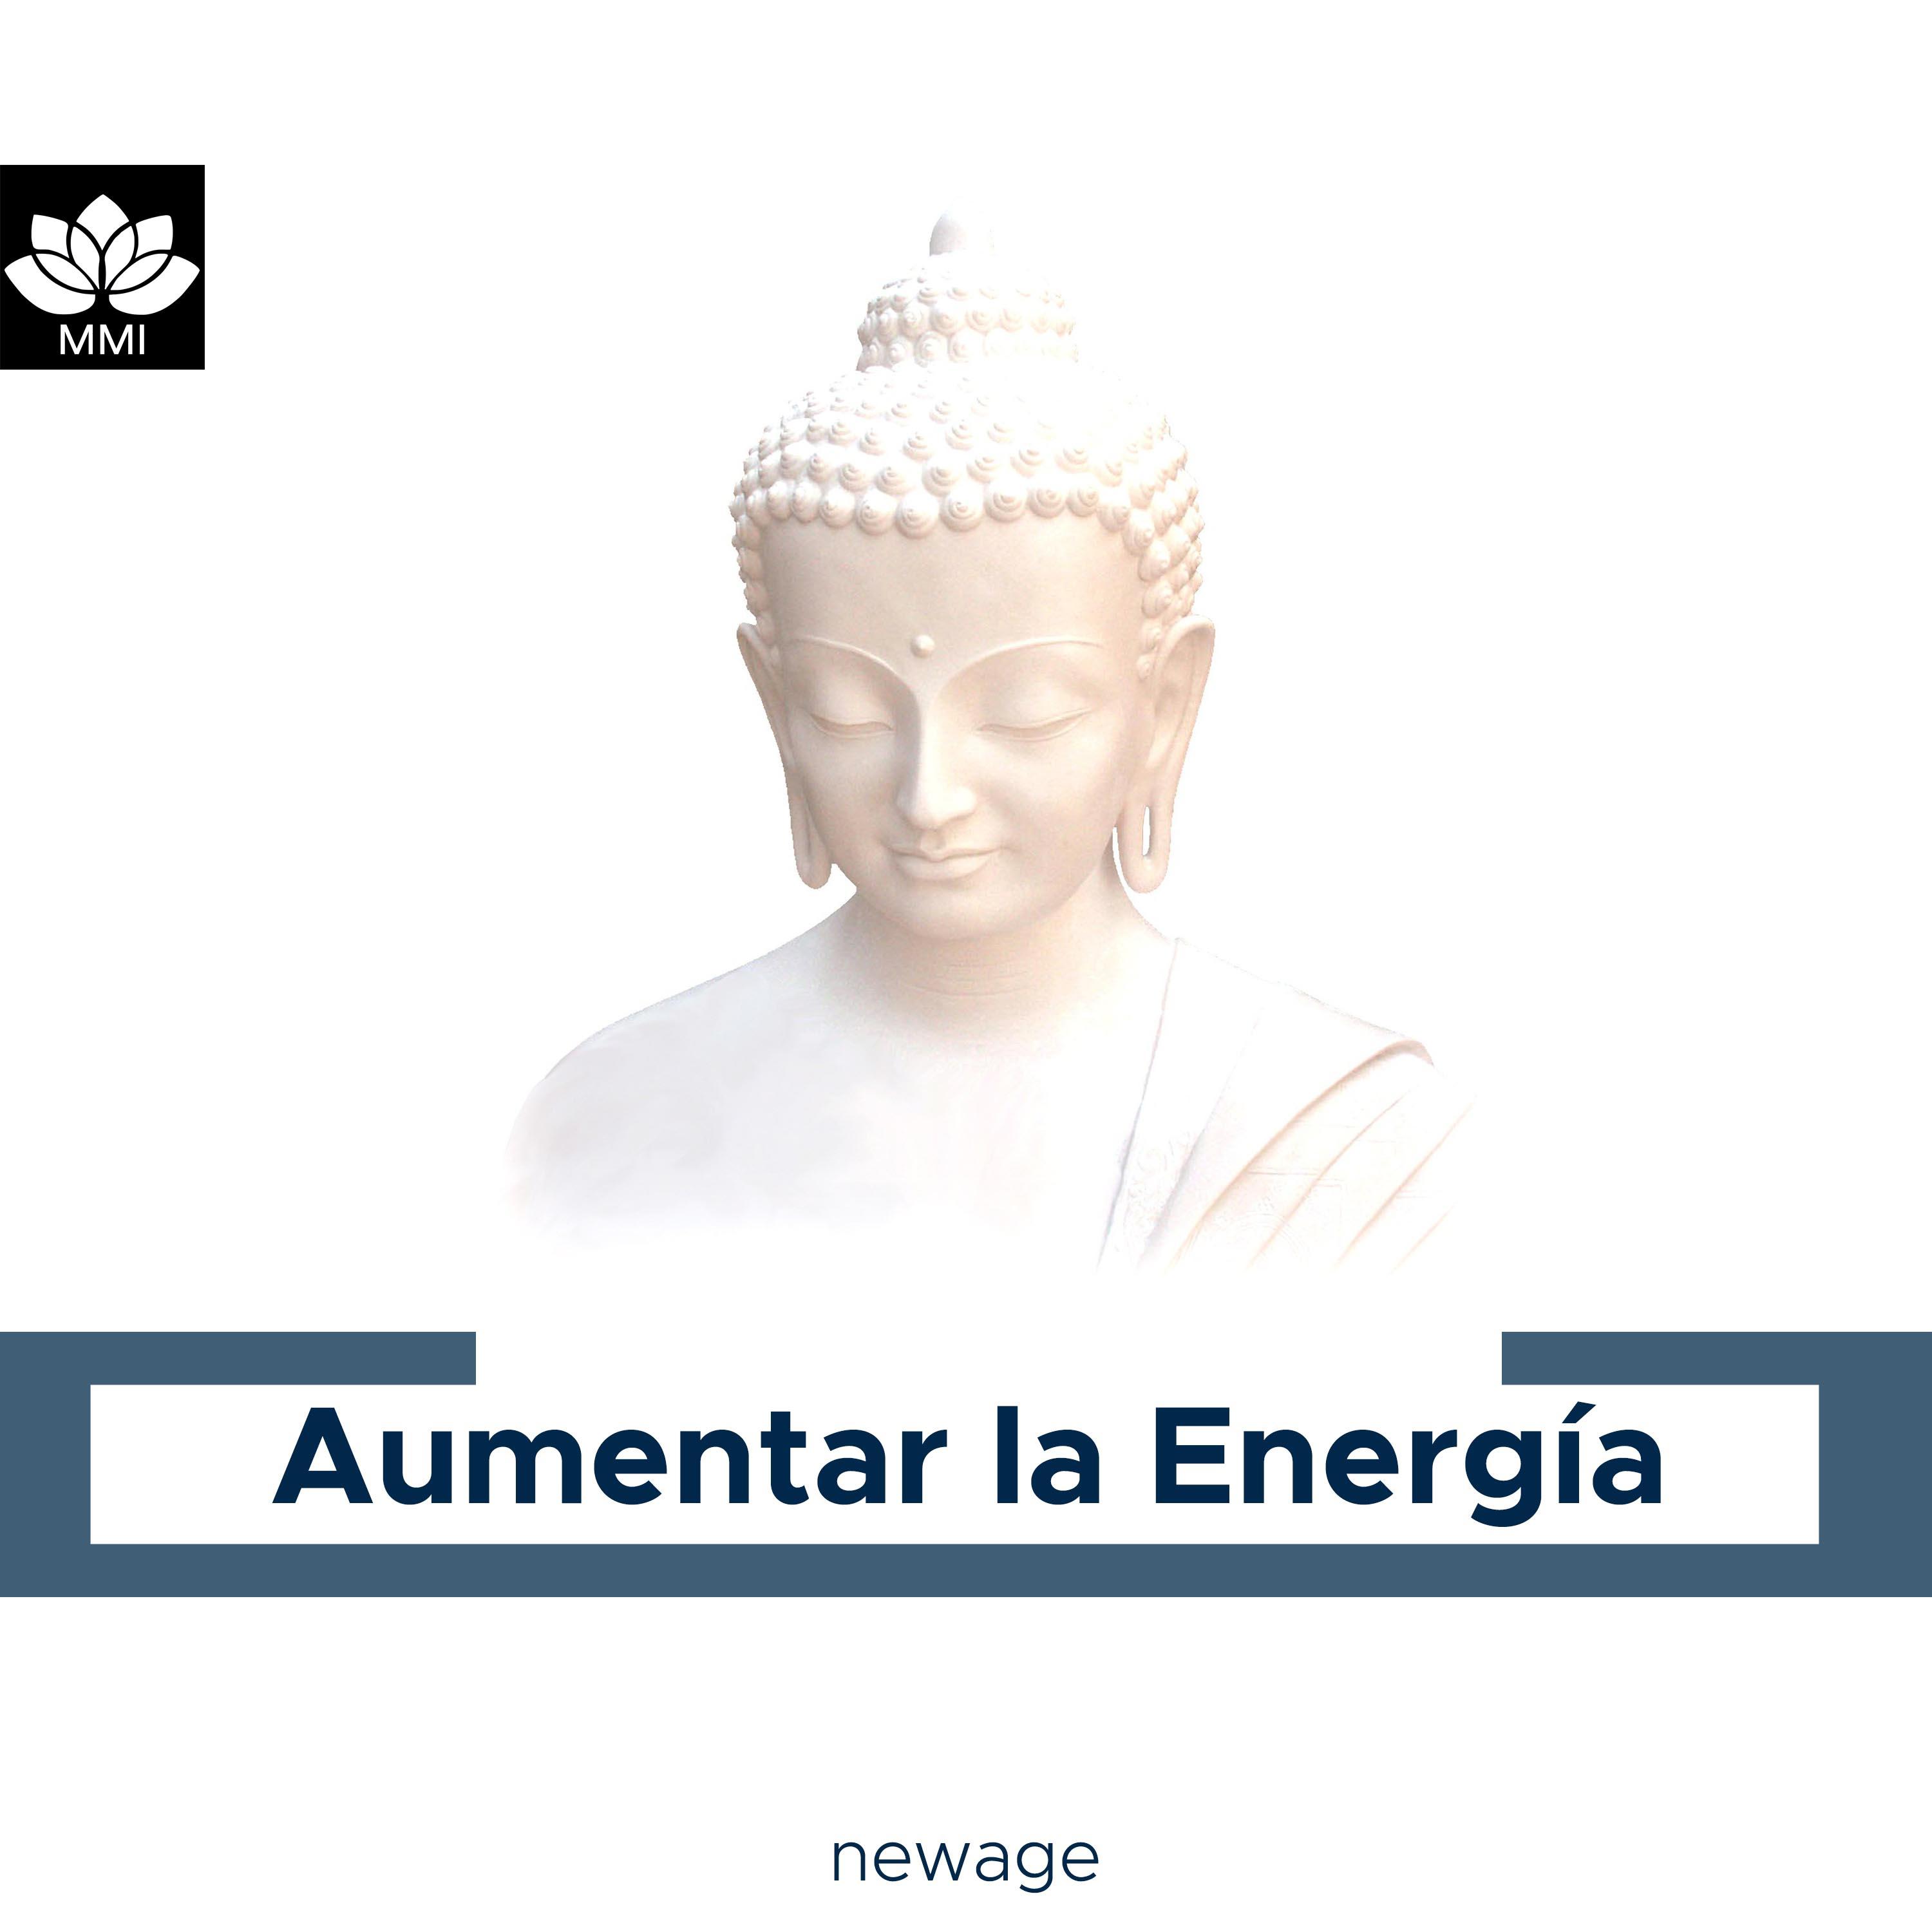 Aumentar la Energi a  Relajacio n Guiada, el Yoga, Meditacioo n, Transformacio n Intelectual y Pensamientos Positivos